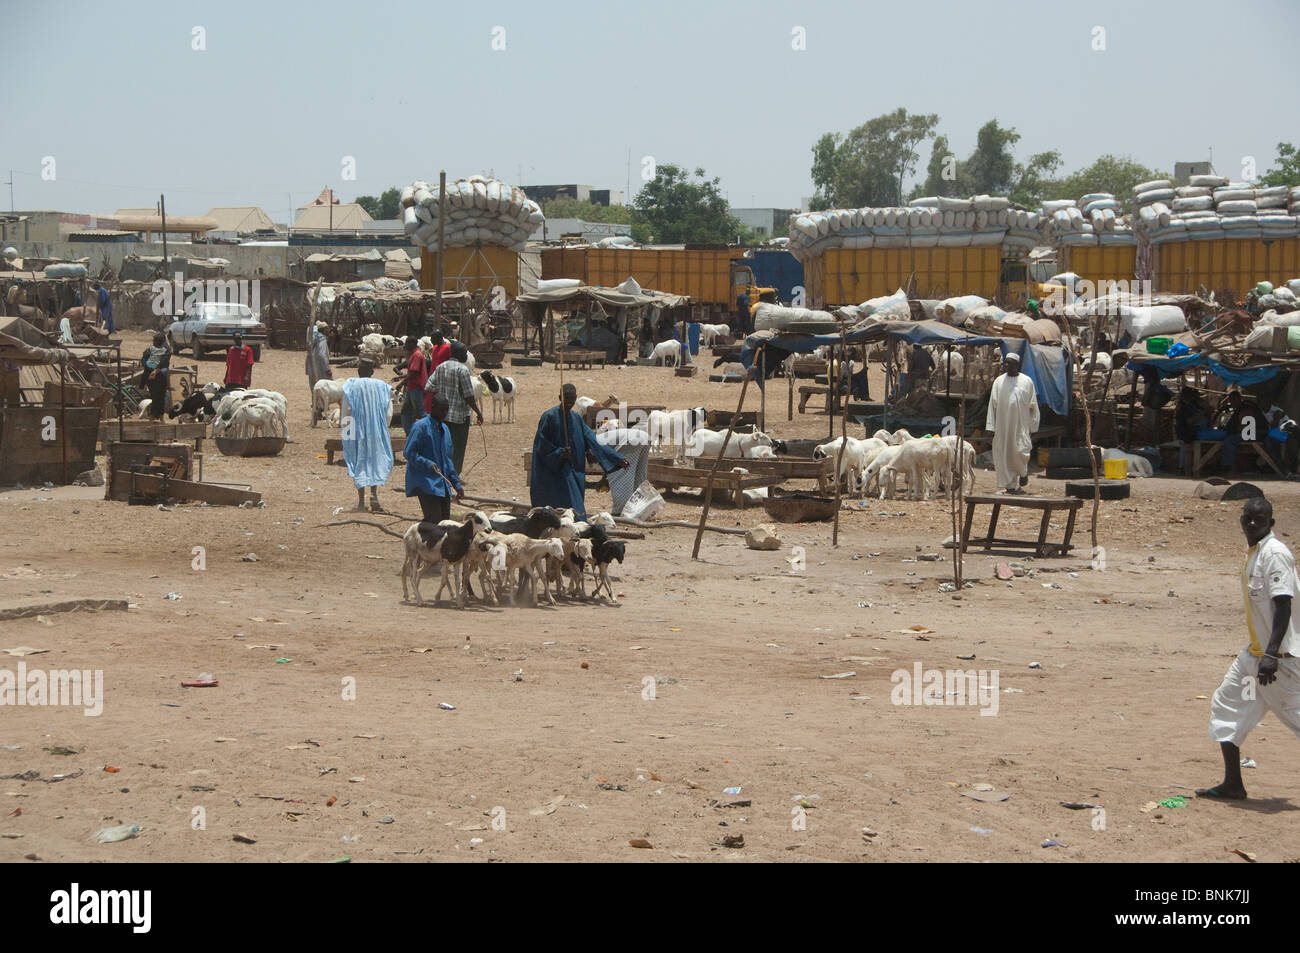 Afrique, Sénégal, Dakar. La ville de Dakar. Le centre-ville et de moutons chèvres marché. Banque D'Images